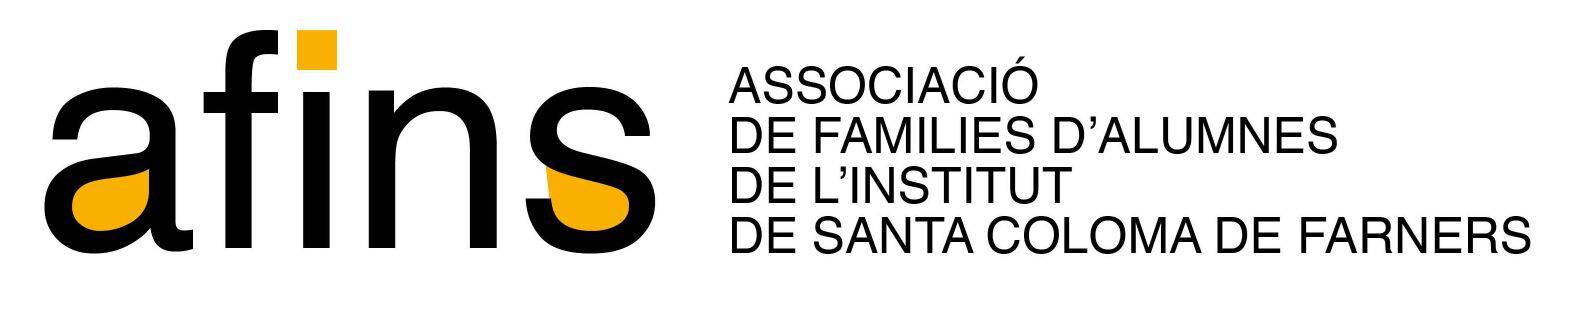 AFINS (Associació de Famílies de l'Institut): Assemblea general ordinària, dimecres 28 de novembre a les 19.30 h.